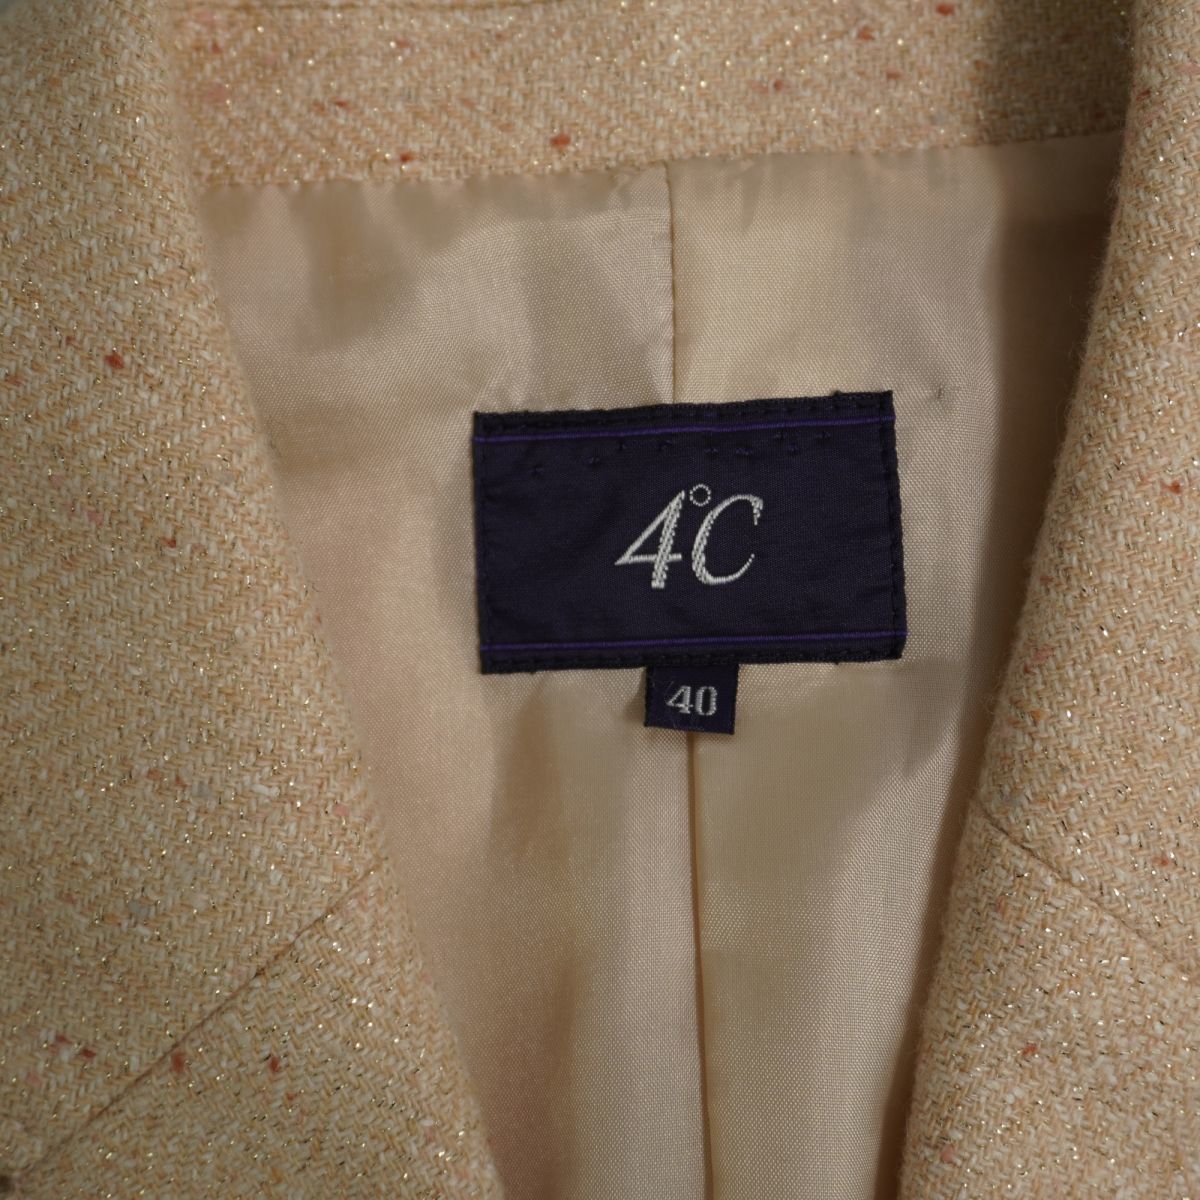  прекрасный товар 4*C выставить юбка костюм tailored jacket общий обратная сторона nep твид ламе колени длина подкладка есть бежевый размер 40*KC1433